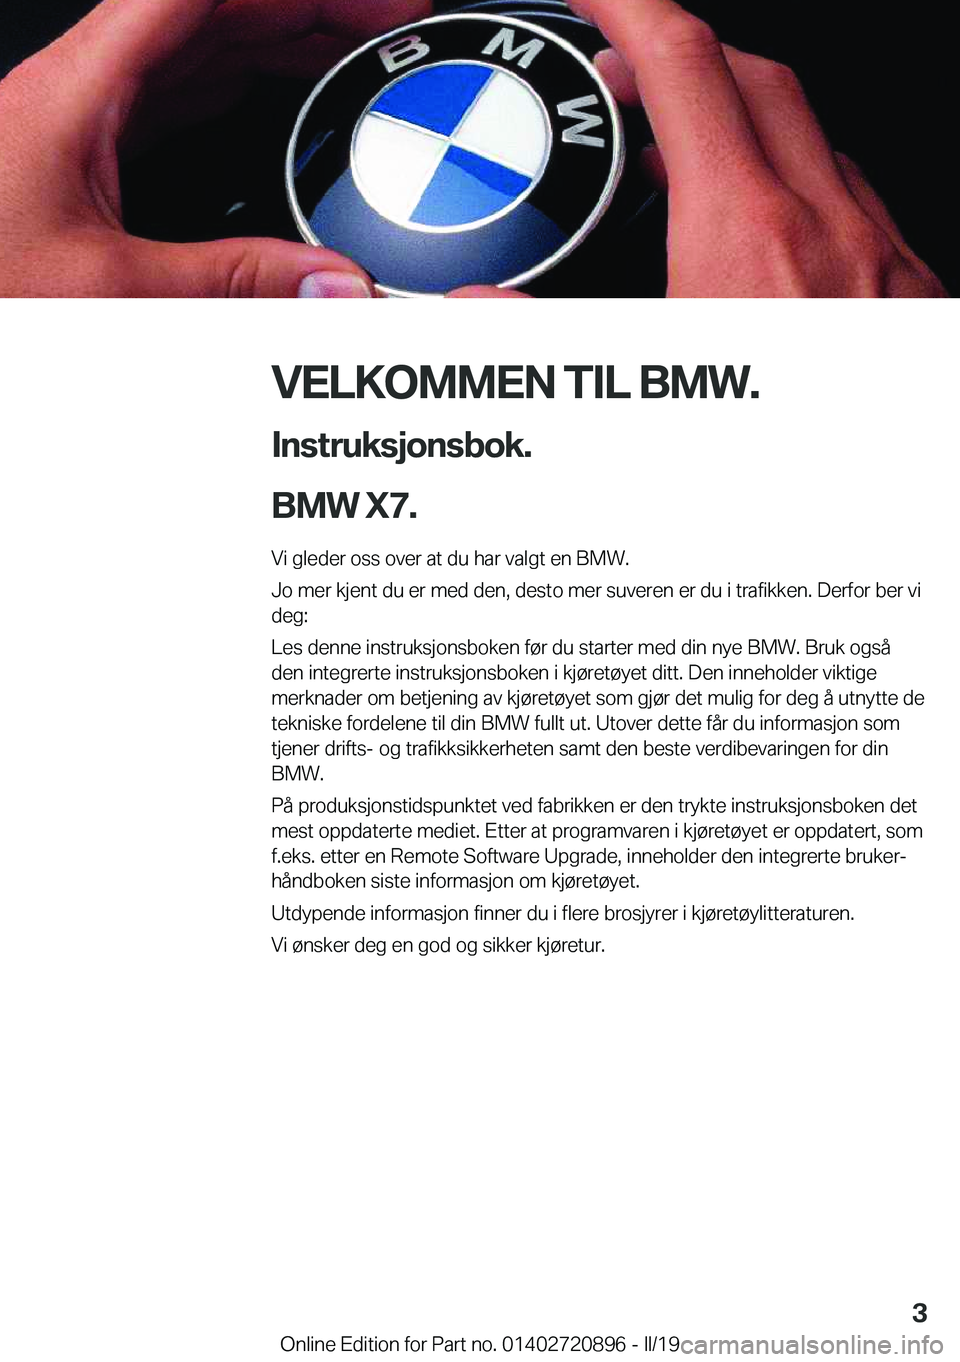 BMW X7 2019  InstruksjonsbØker (in Norwegian) �V�E�L�K�O�M�M�E�N��T�I�L��B�M�W�.�I�n�s�t�r�u�k�s�j�o�n�s�b�o�k�.
�B�M�W��X�7�.
�V�i��g�l�e�d�e�r��o�s�s��o�v�e�r��a�t��d�u��h�a�r��v�a�l�g�t��e�n��B�M�W�.
�J�o��m�e�r��k�j�e�n�t��d�u�